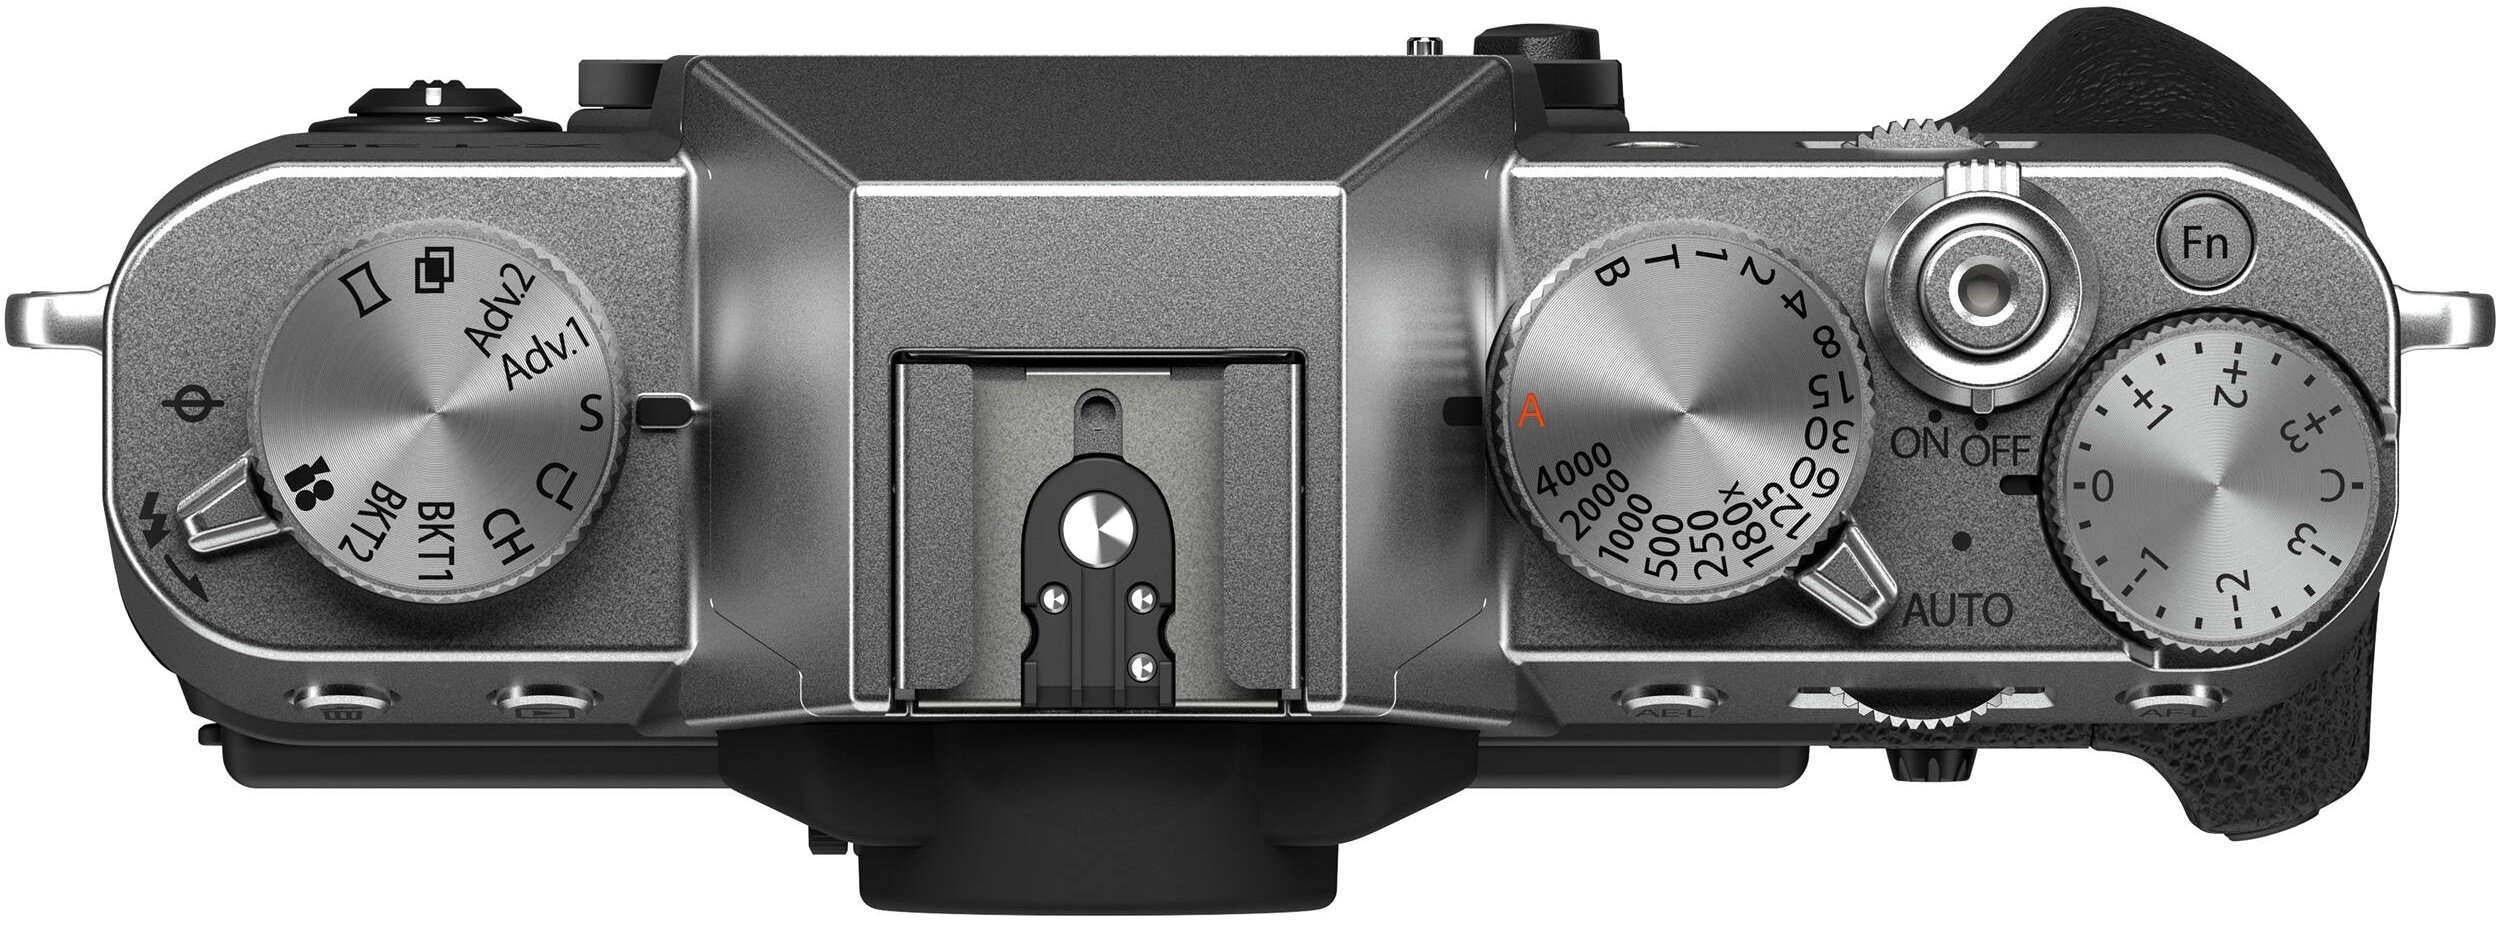 Fujifilm X-T30 II Kit XF 18-55mm F2.8-4 R LM OIS Silver